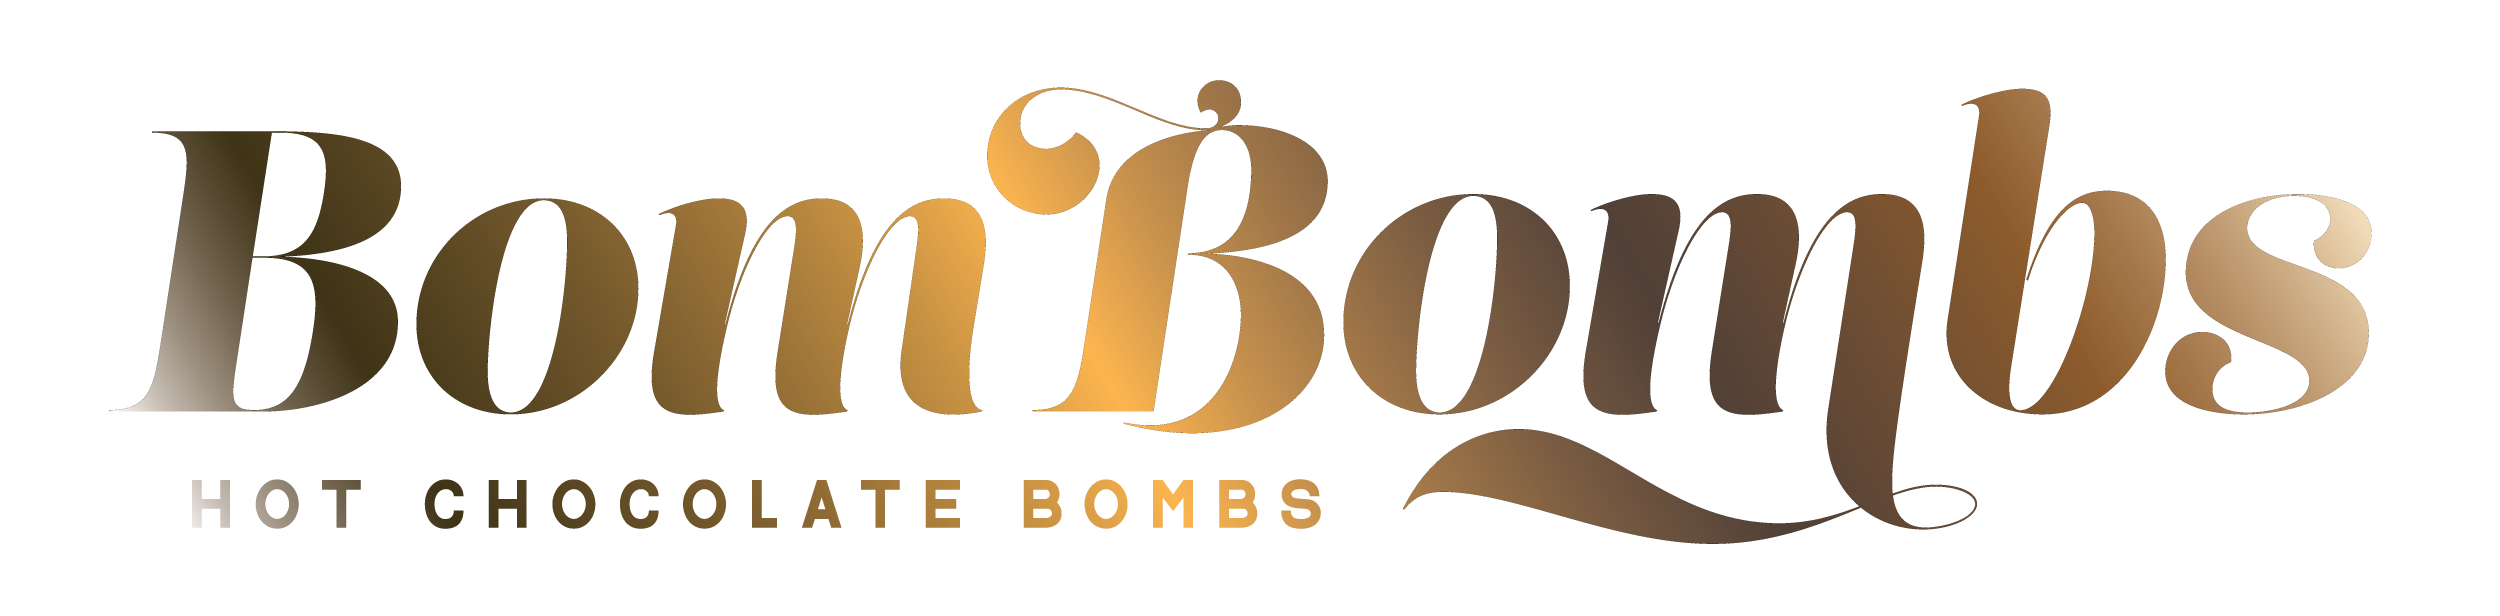 BomBombs